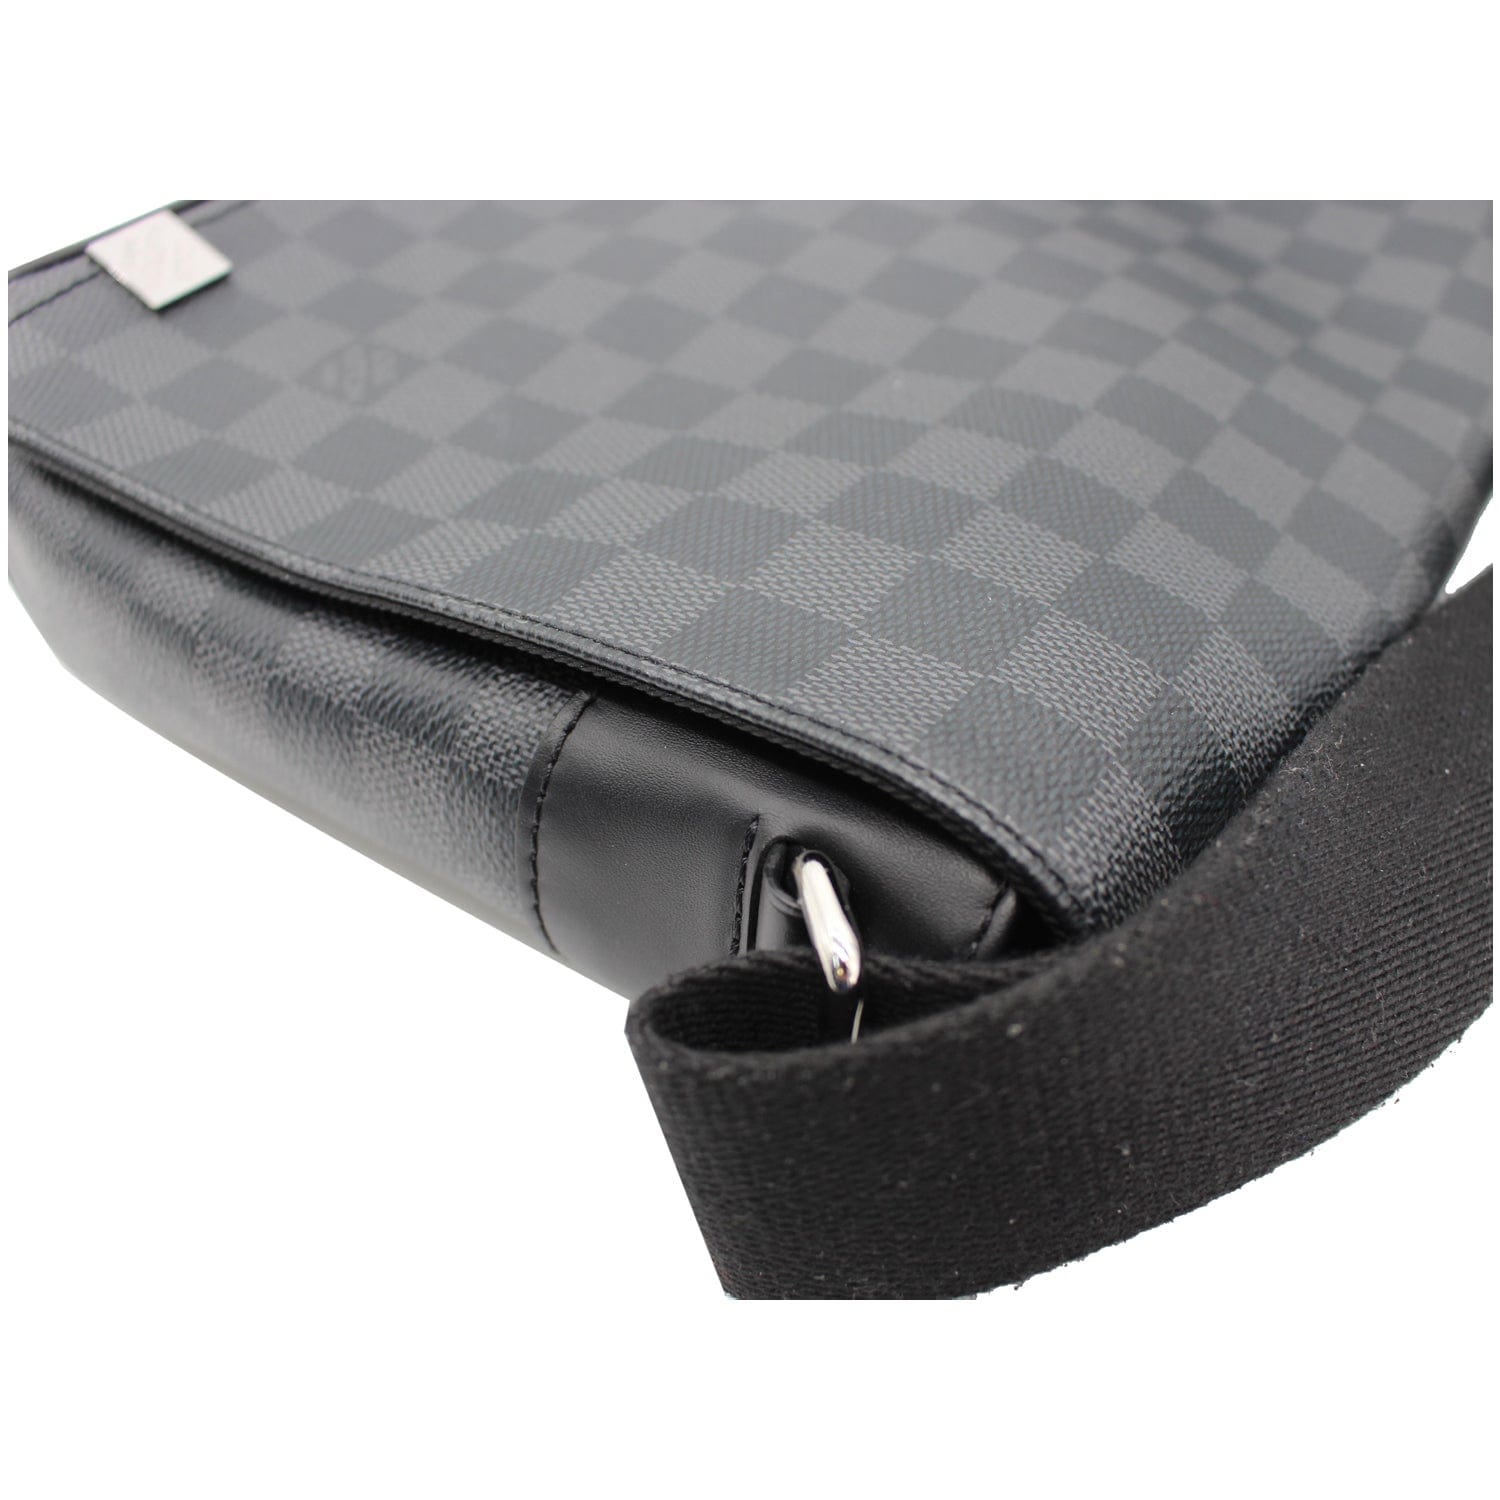 Louis Vuitton District mm Damier Graphite Messenger Bag Black